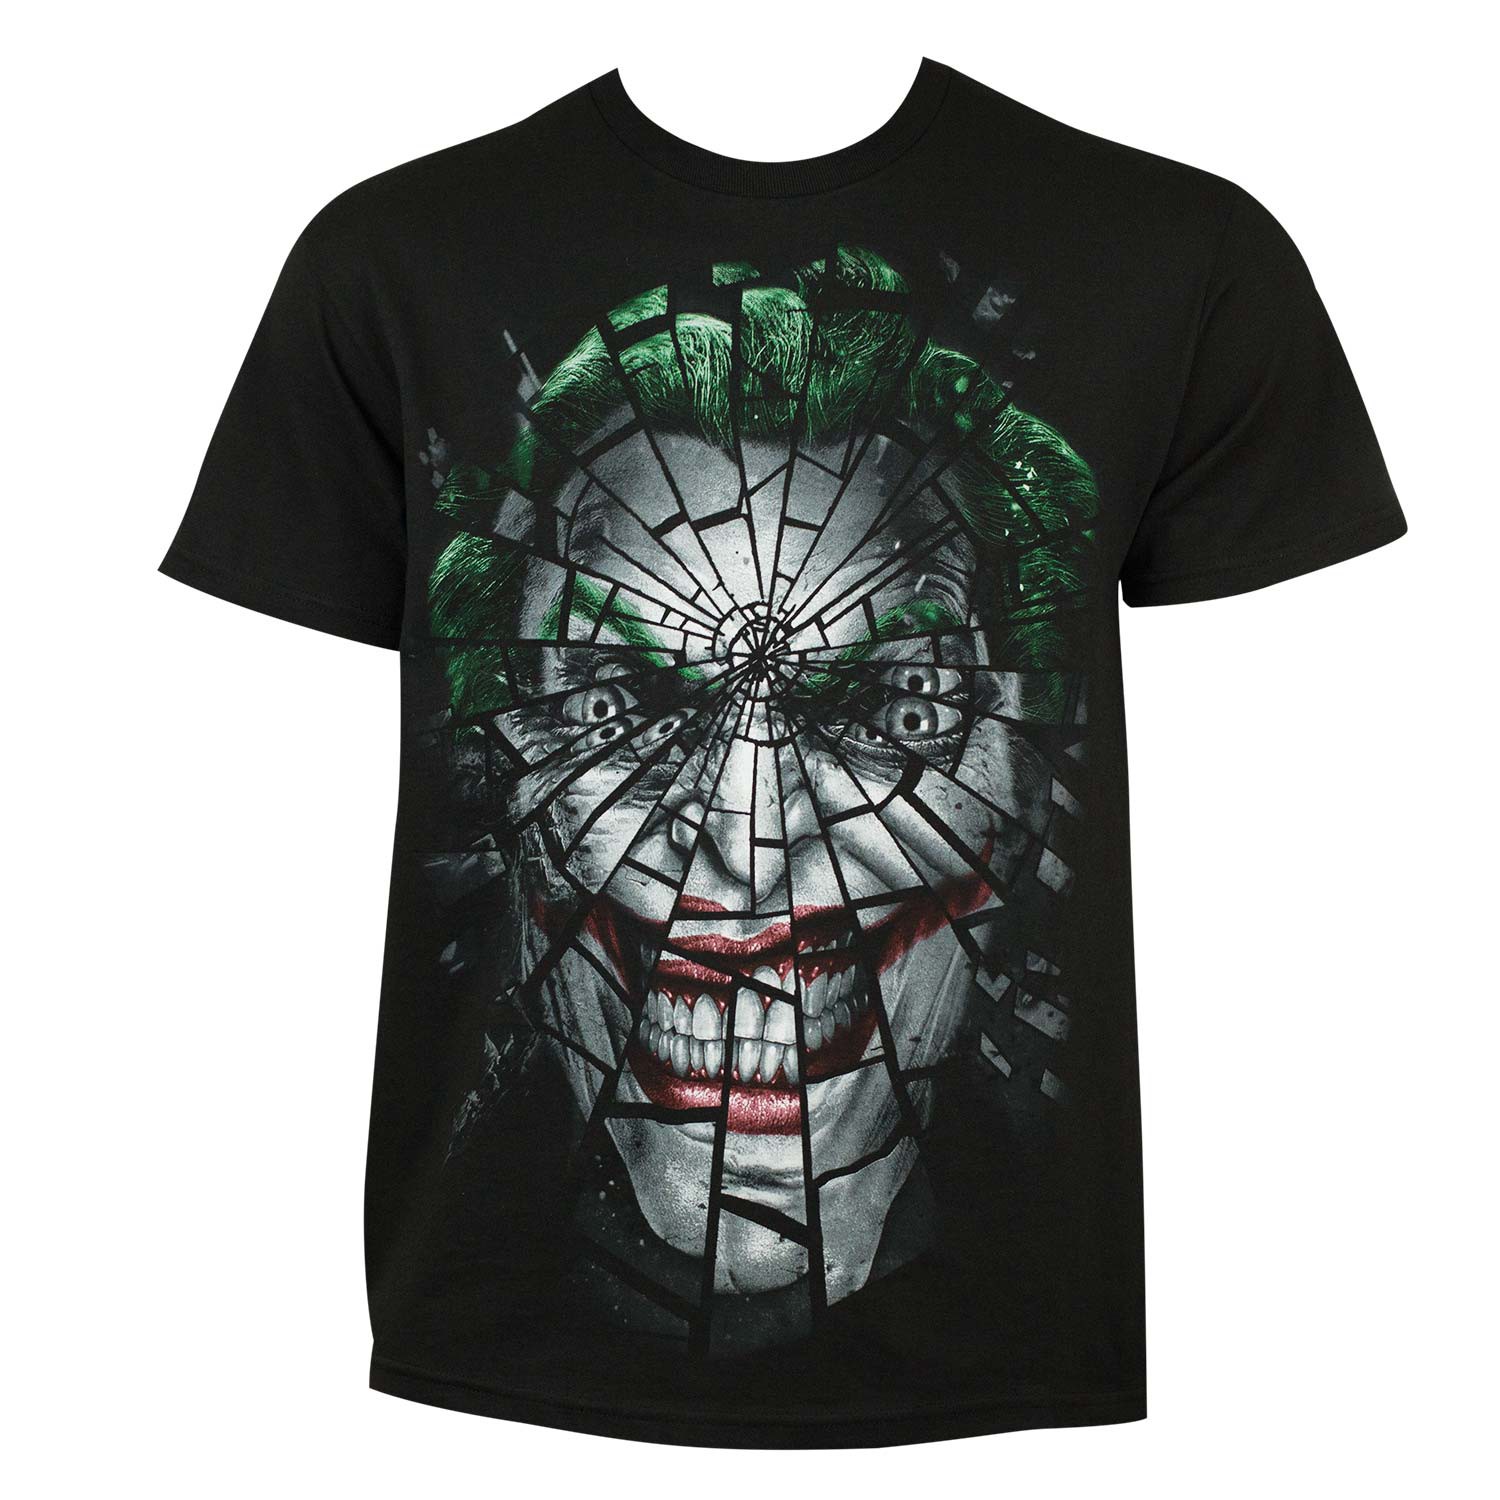 Joker Shattered Face Tee Shirt